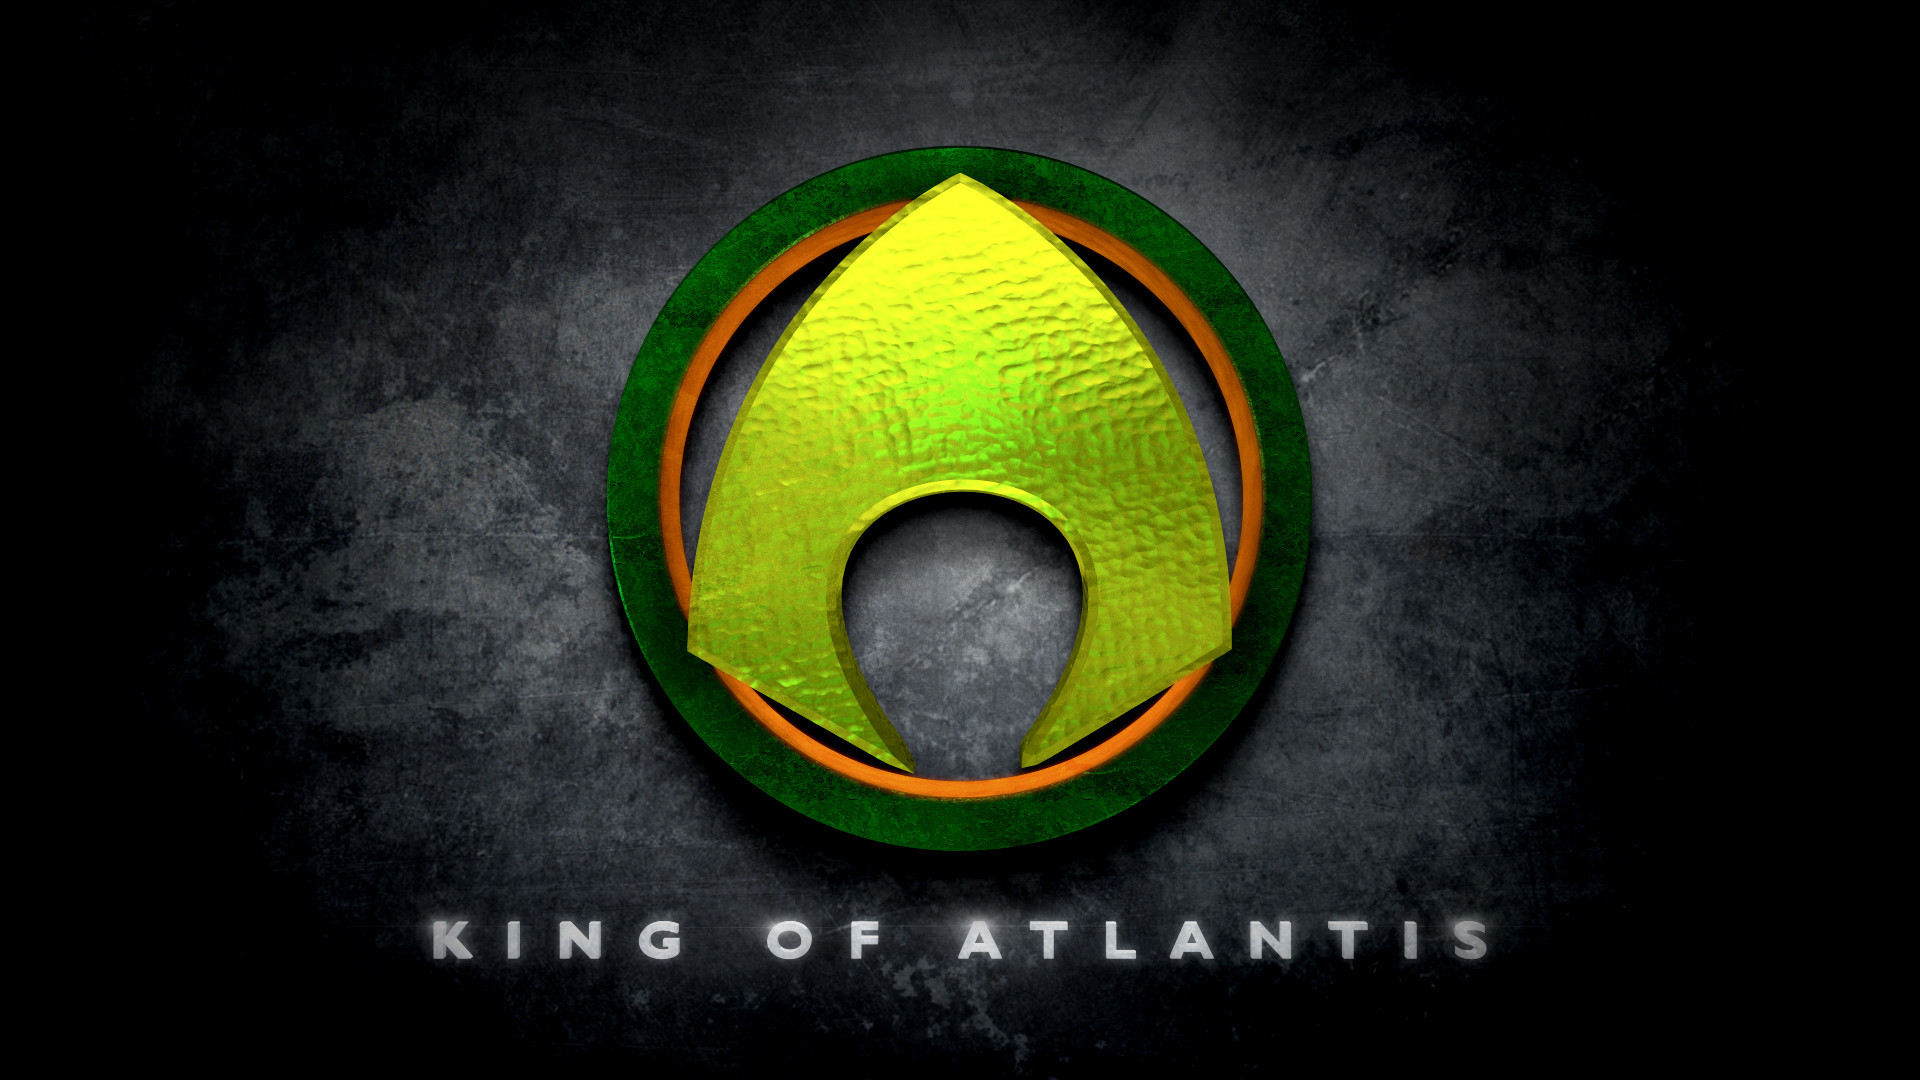 1920x1080 King of Atlantis logo by Beloeil-Jones